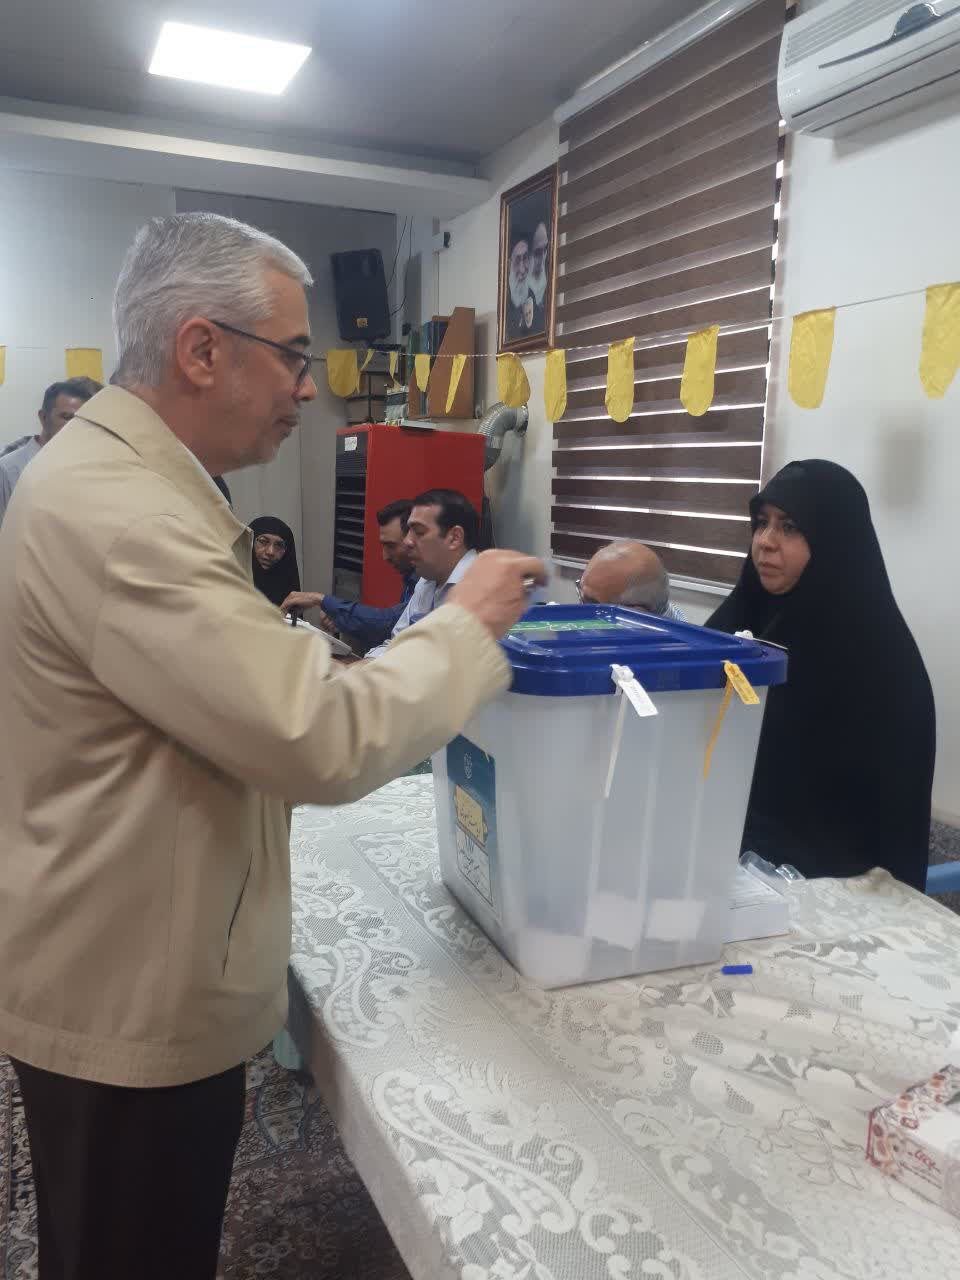 عکس | پوشش متفاوت سردار ارشد سپاه در لحظه انداختن رای به صندوق رای